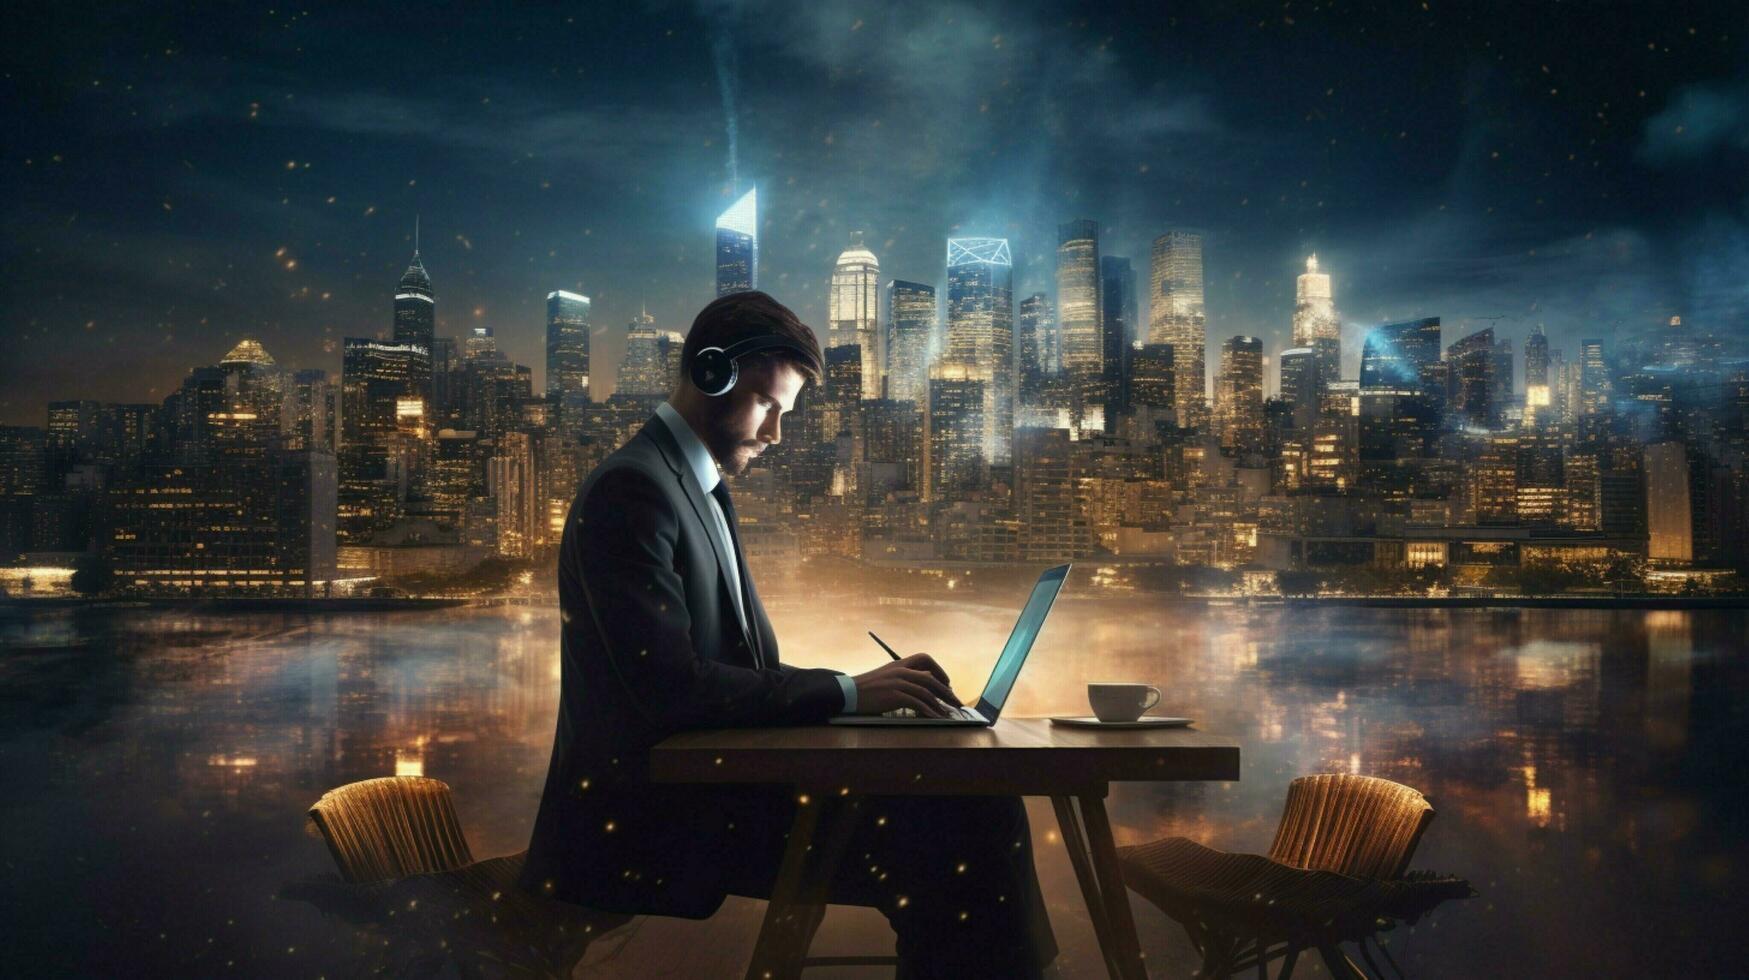 zakenman typen Aan laptop in verlichte stadsgezicht foto